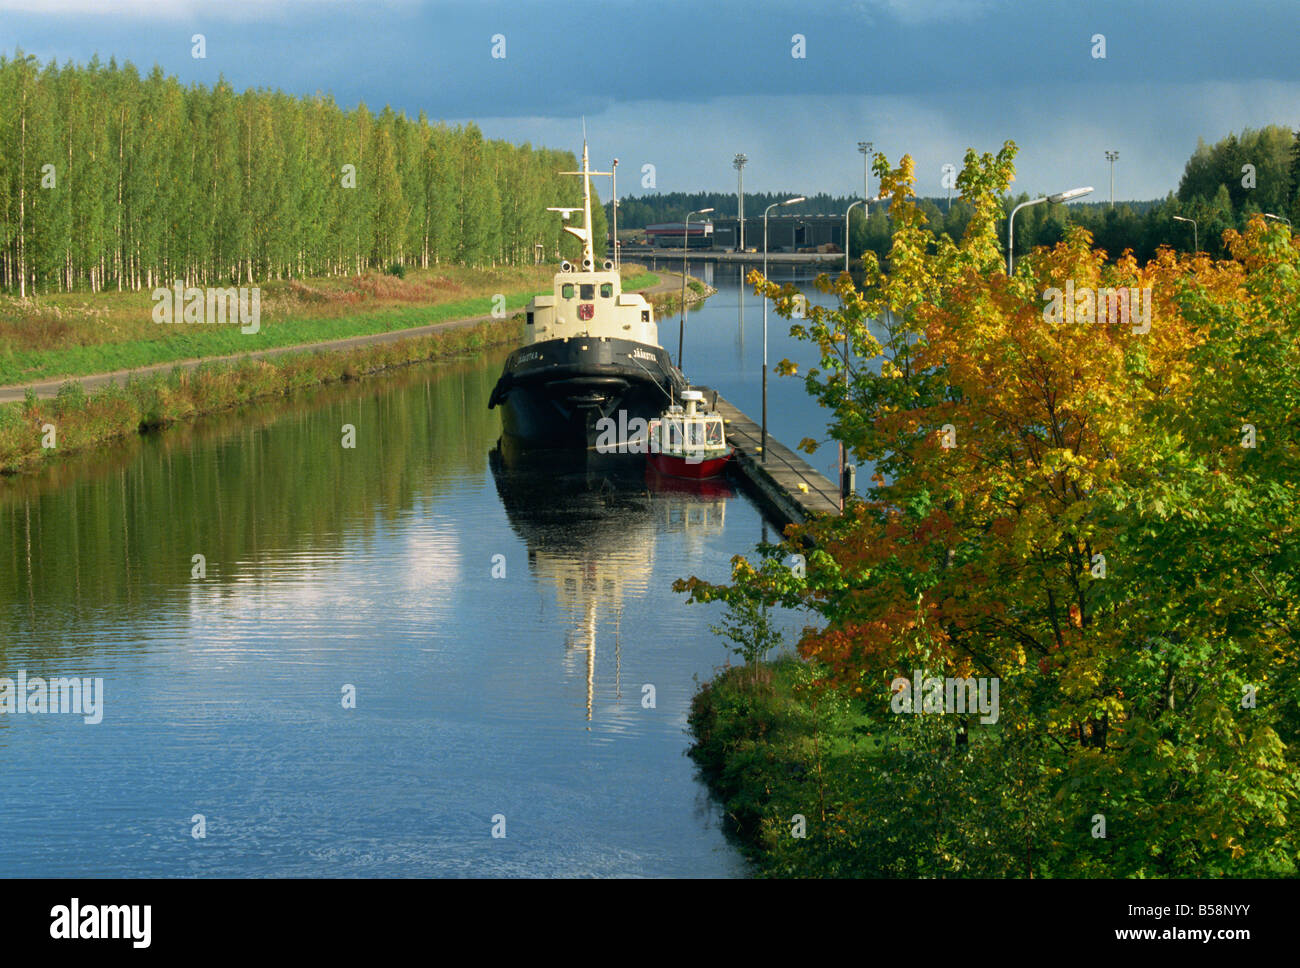 Des voies navigables le Canal de Saimaa Mustulo près de Lappeenranta FINLANDE Scandinavie Europe Banque D'Images